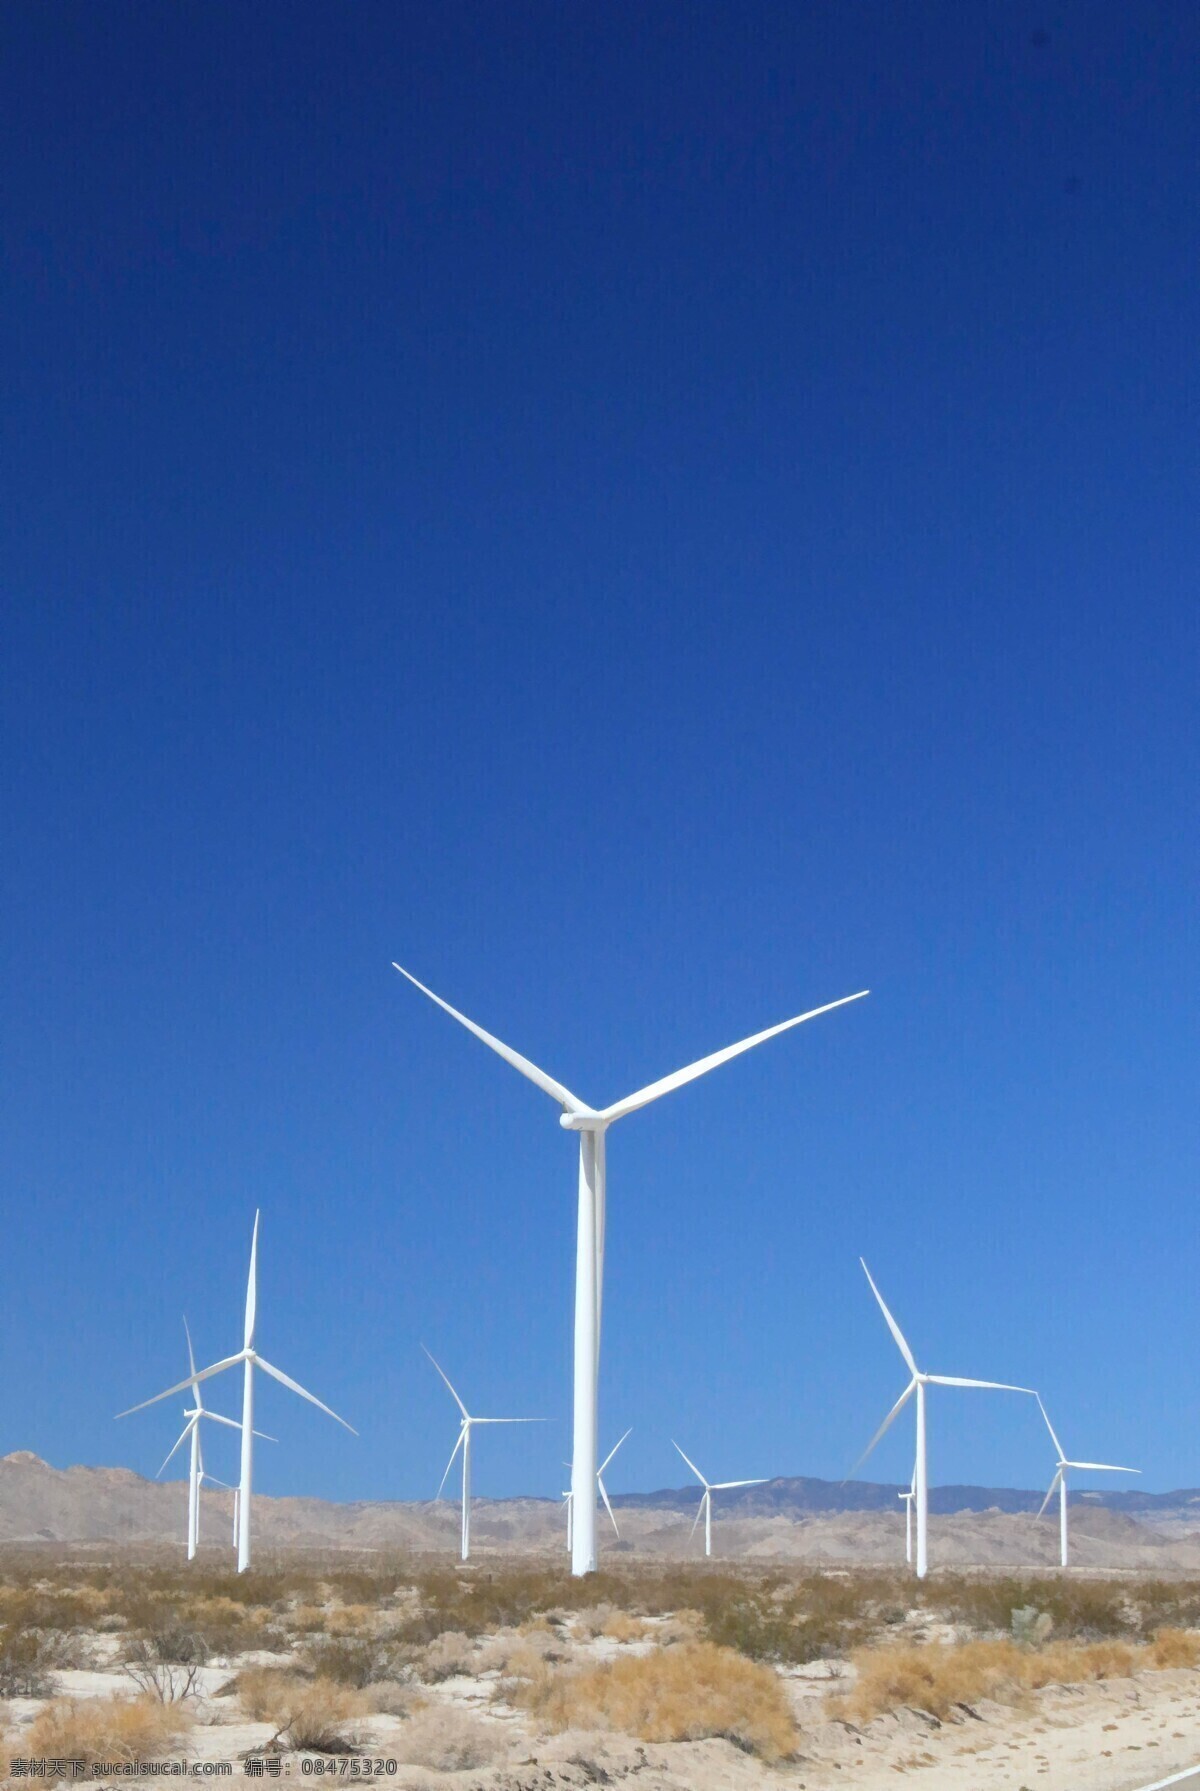 风力发电机 发发电机 机械设备 电力设备 电力设施 装备 现代科技 工业生产